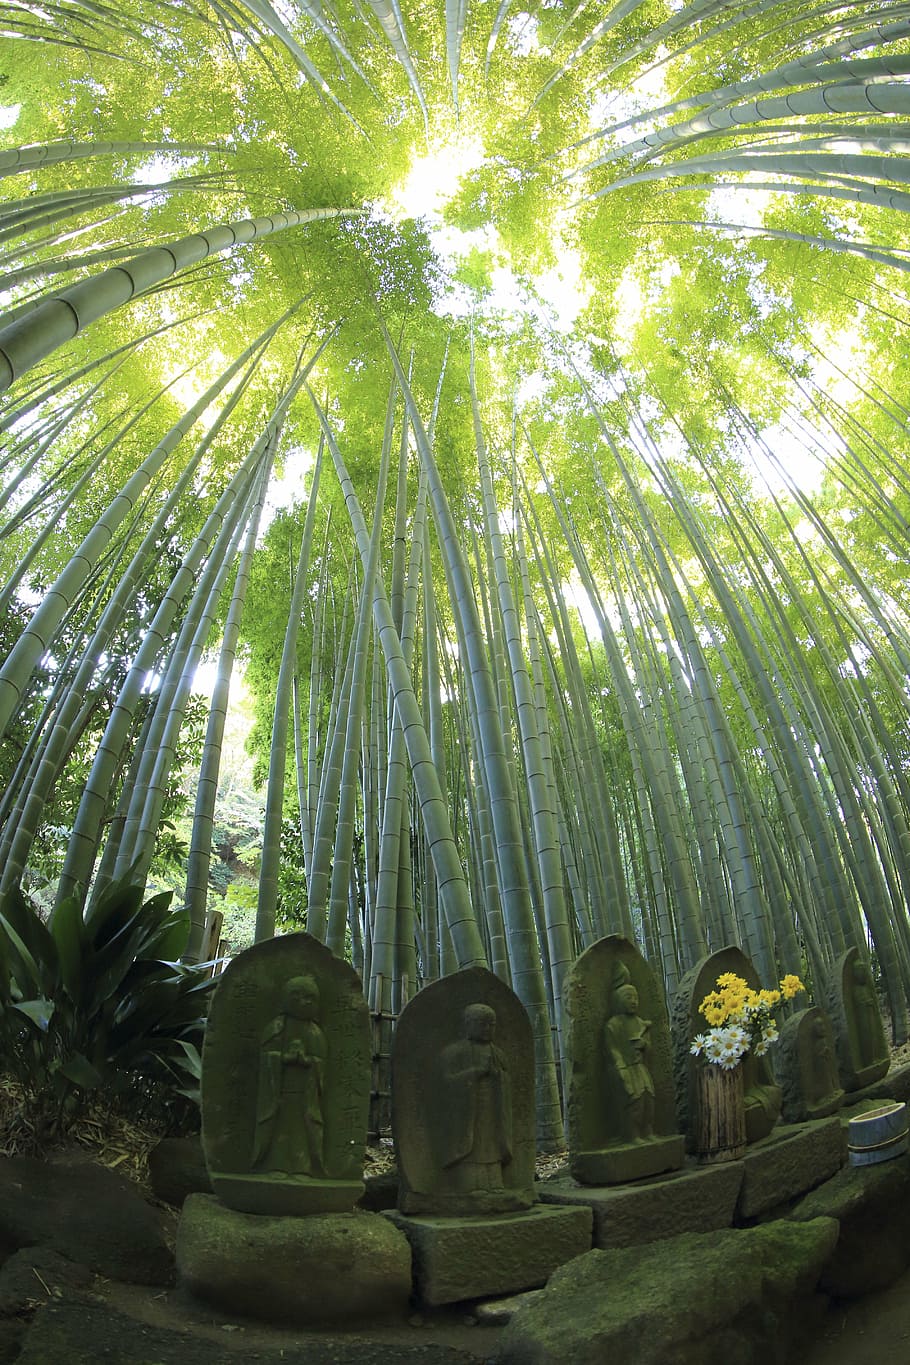 monumentos de piedra, al lado, hierbas de bambú, durante el día, naturaleza, hojas, verde, bambú, maderas, bosque